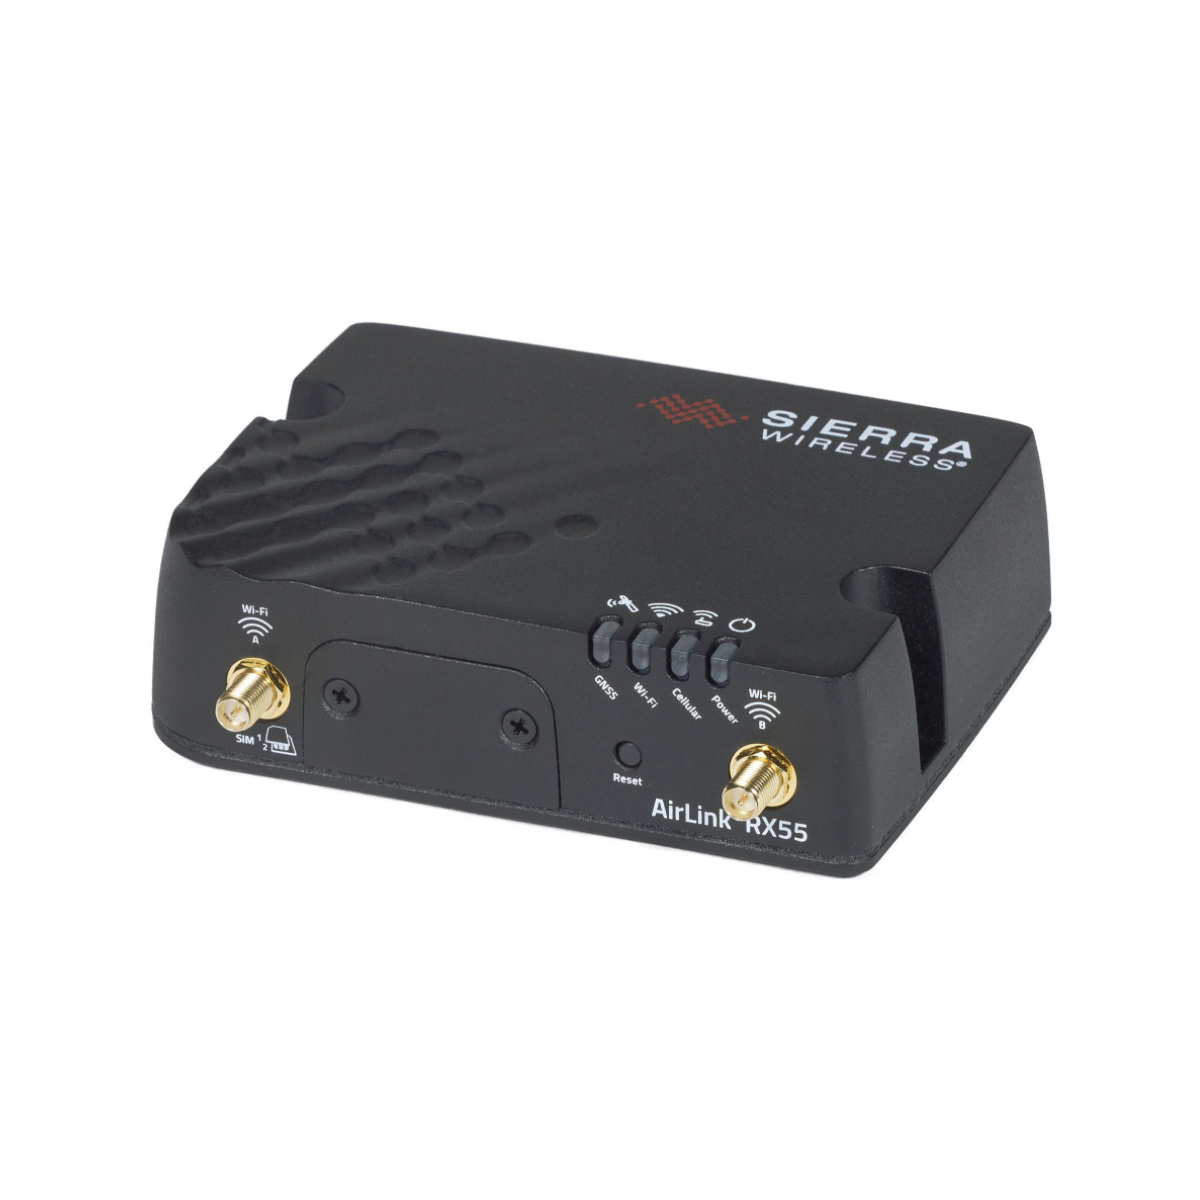 Sierra Wireless RX55